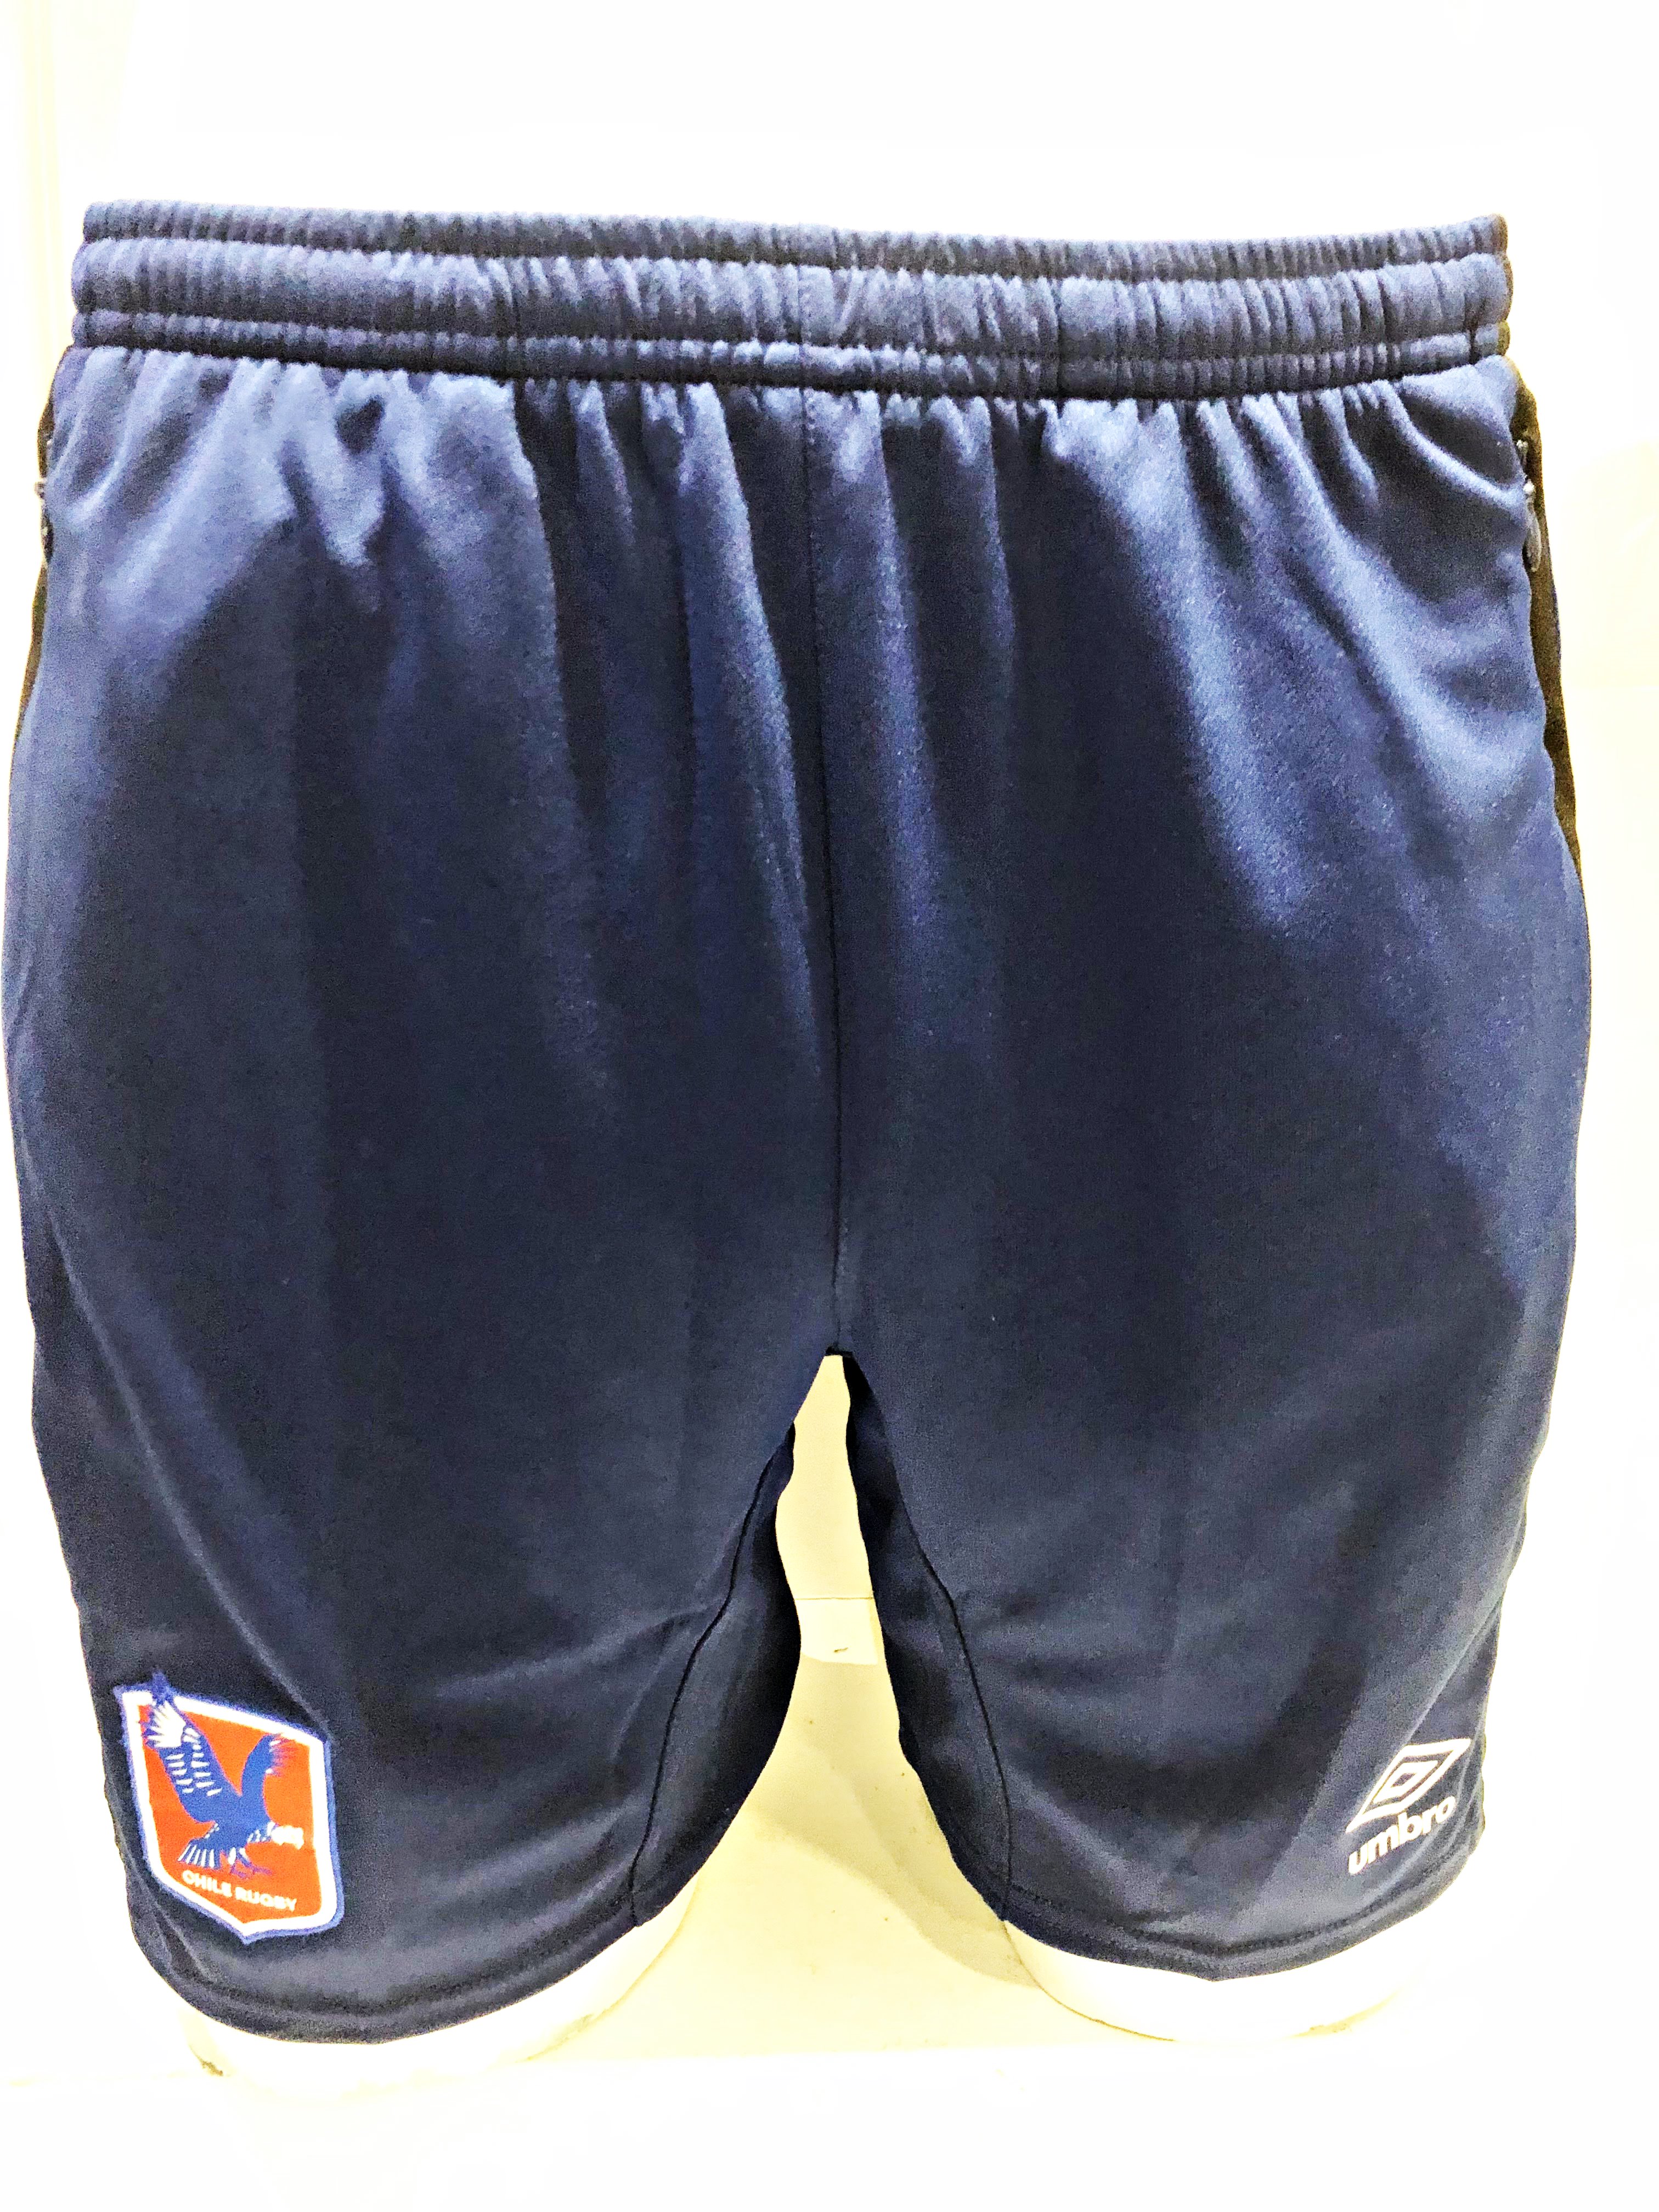 Umbro Condores Training Shorts